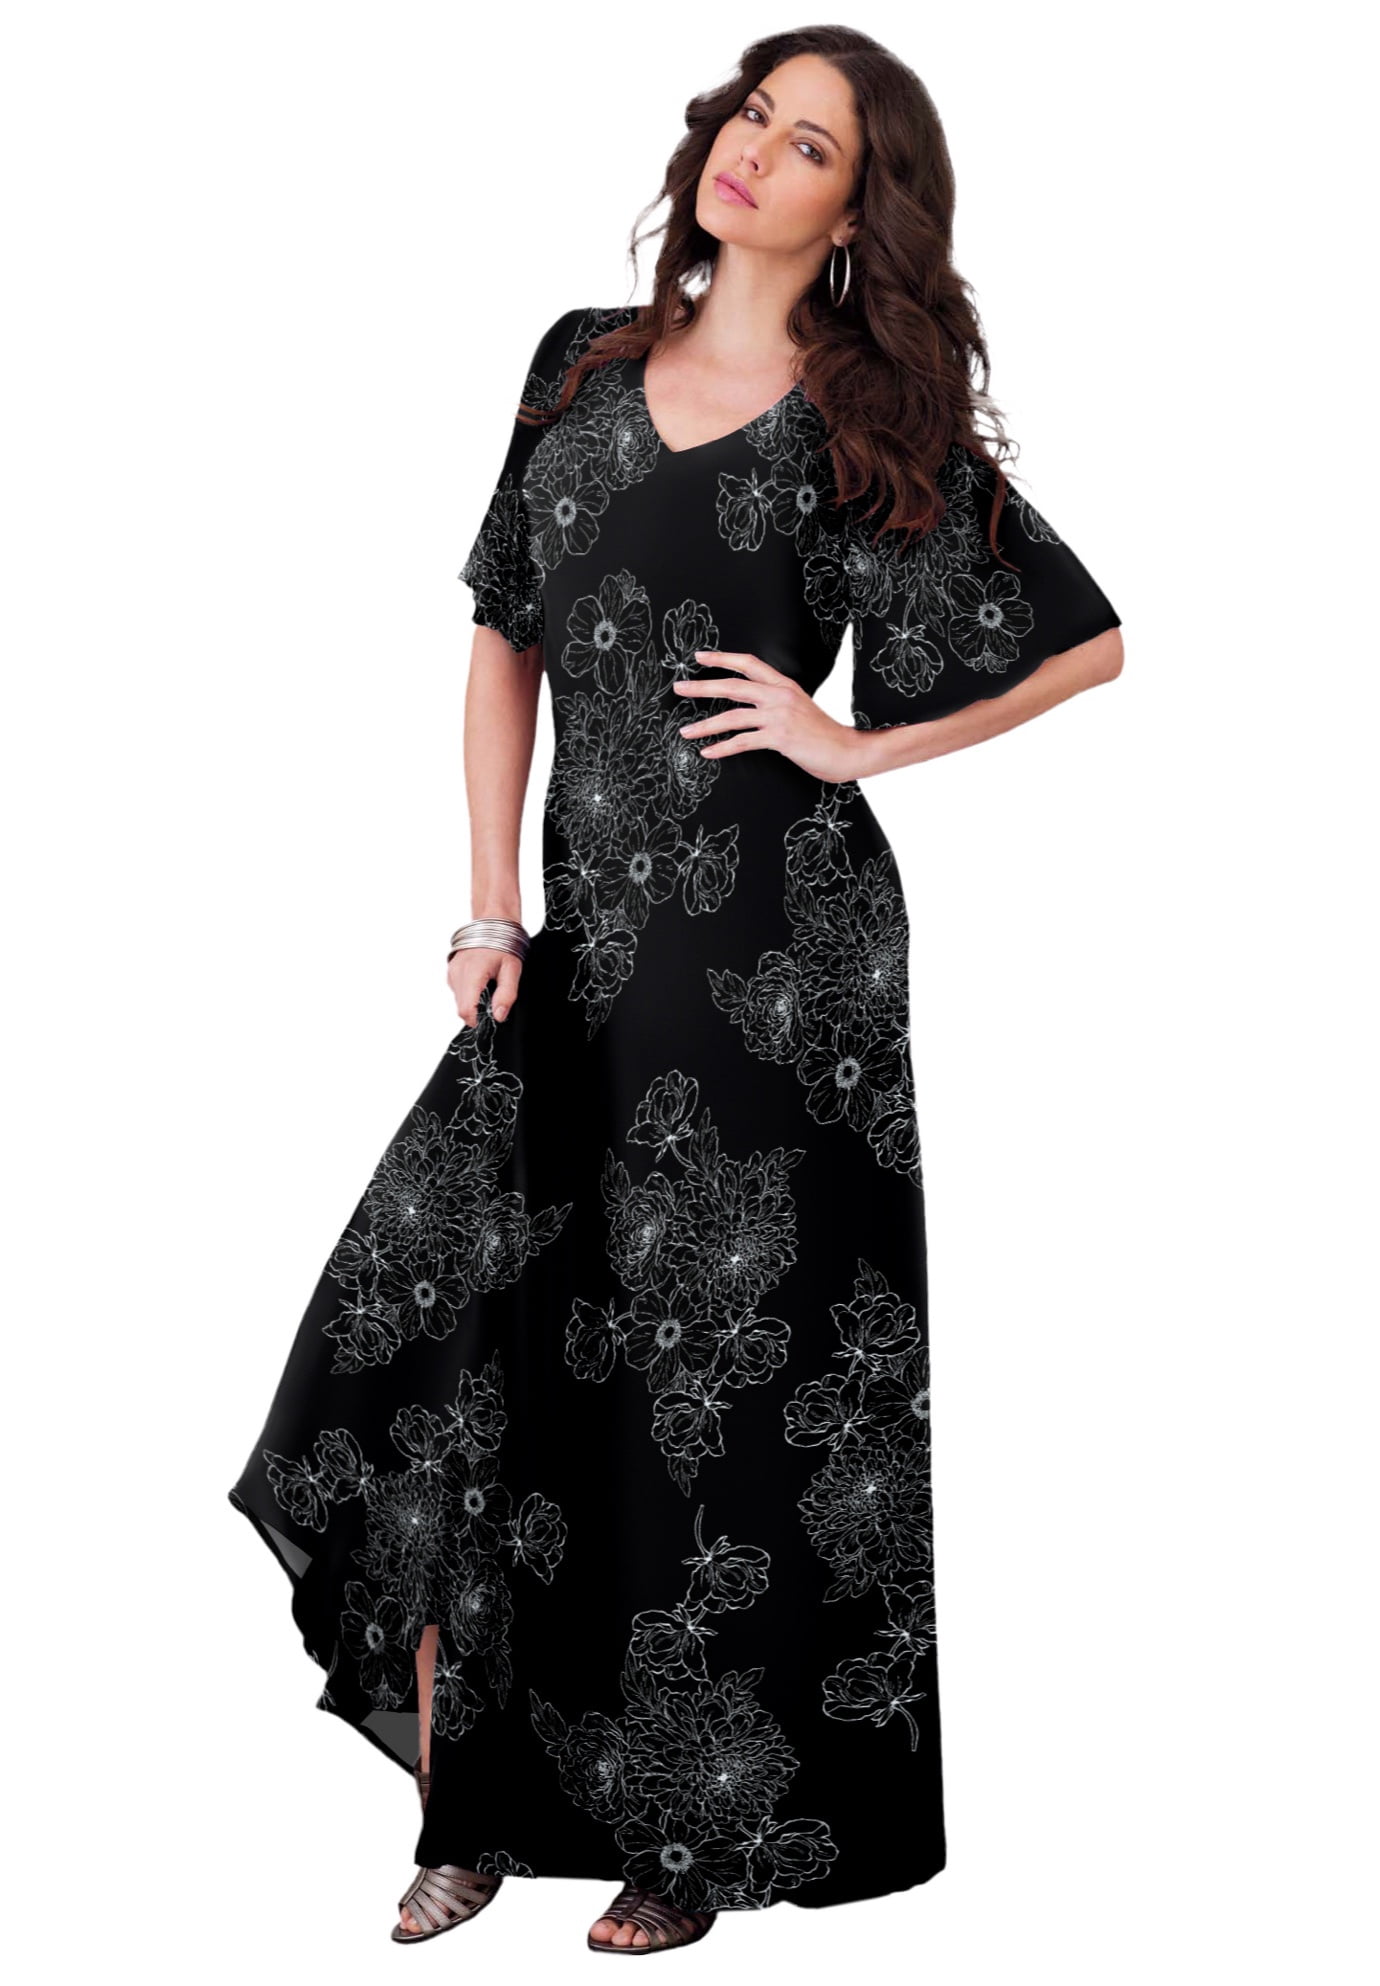 Roaman's Women's Plus Size Flutter-Sleeve Crinkle Dress Dress - Walmart.com